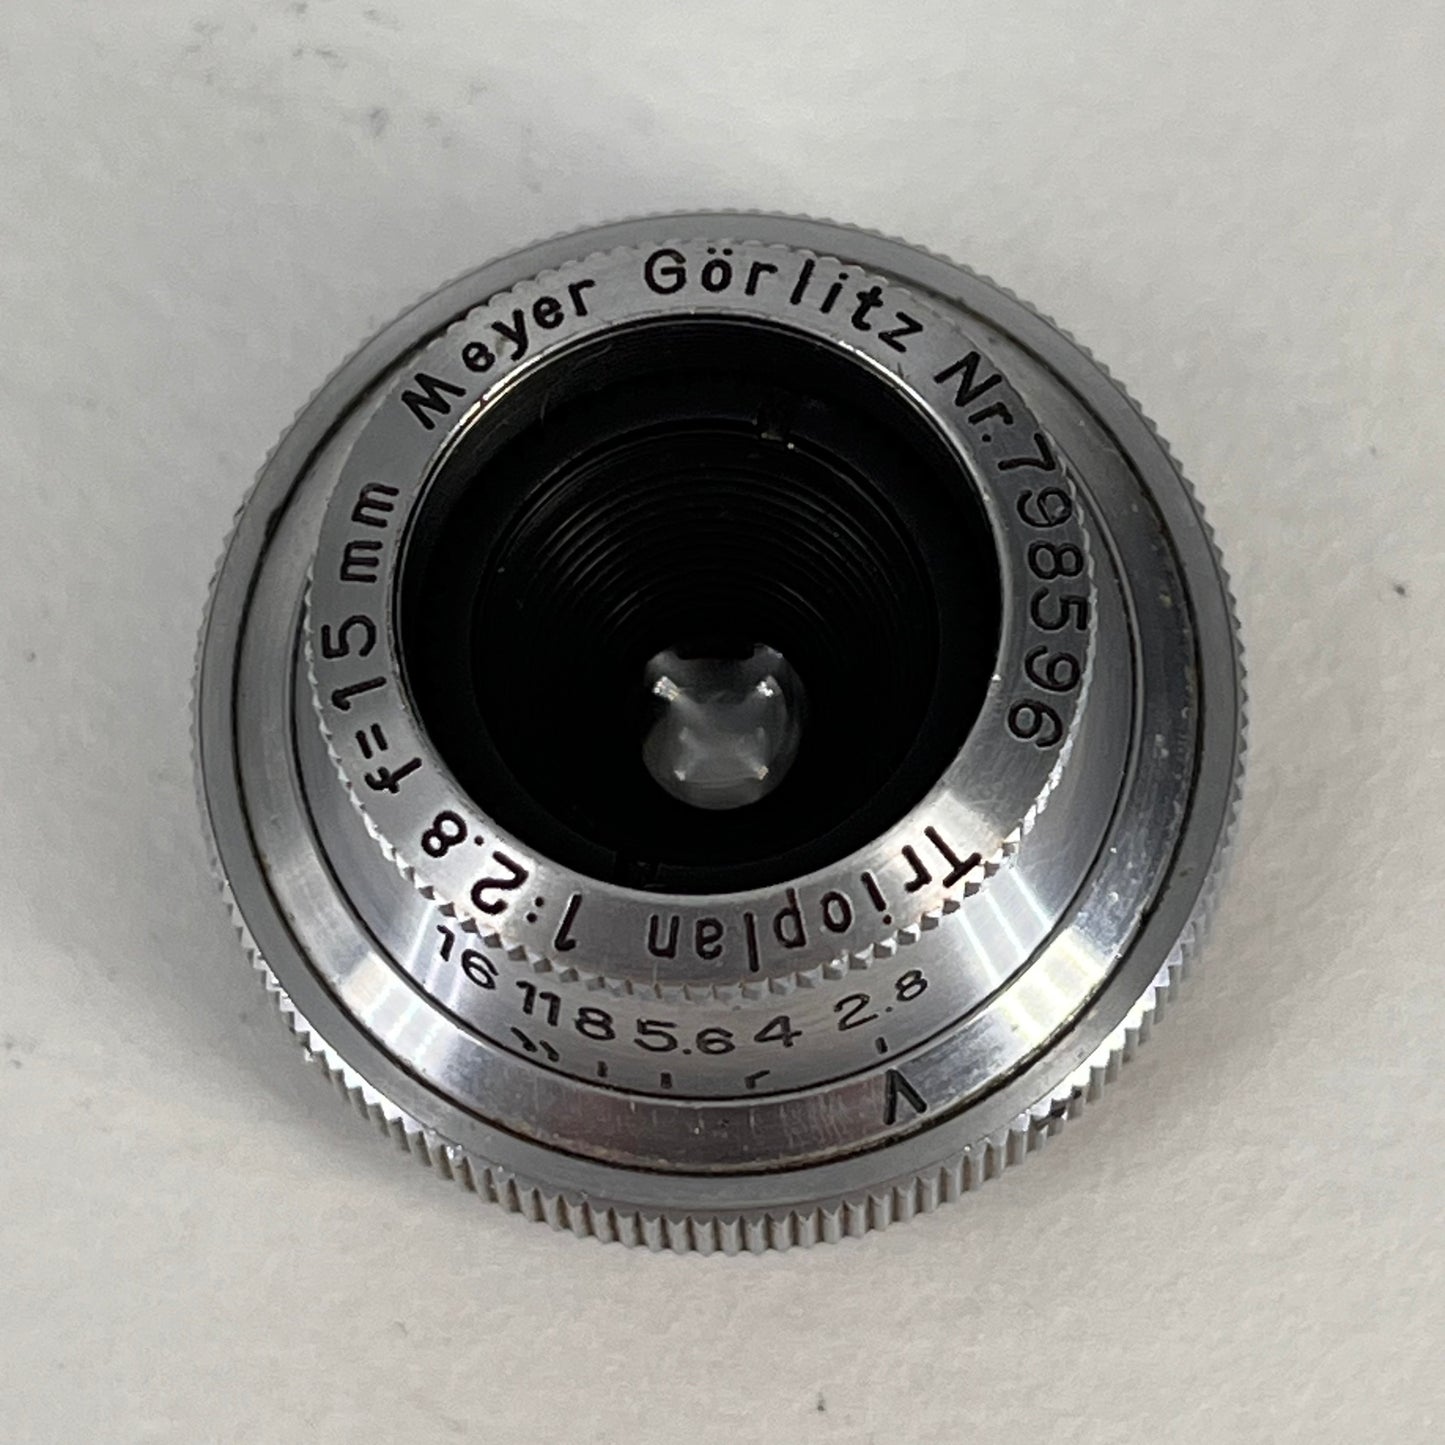 Meyer Görlitz Trioplan 15mm f2.8